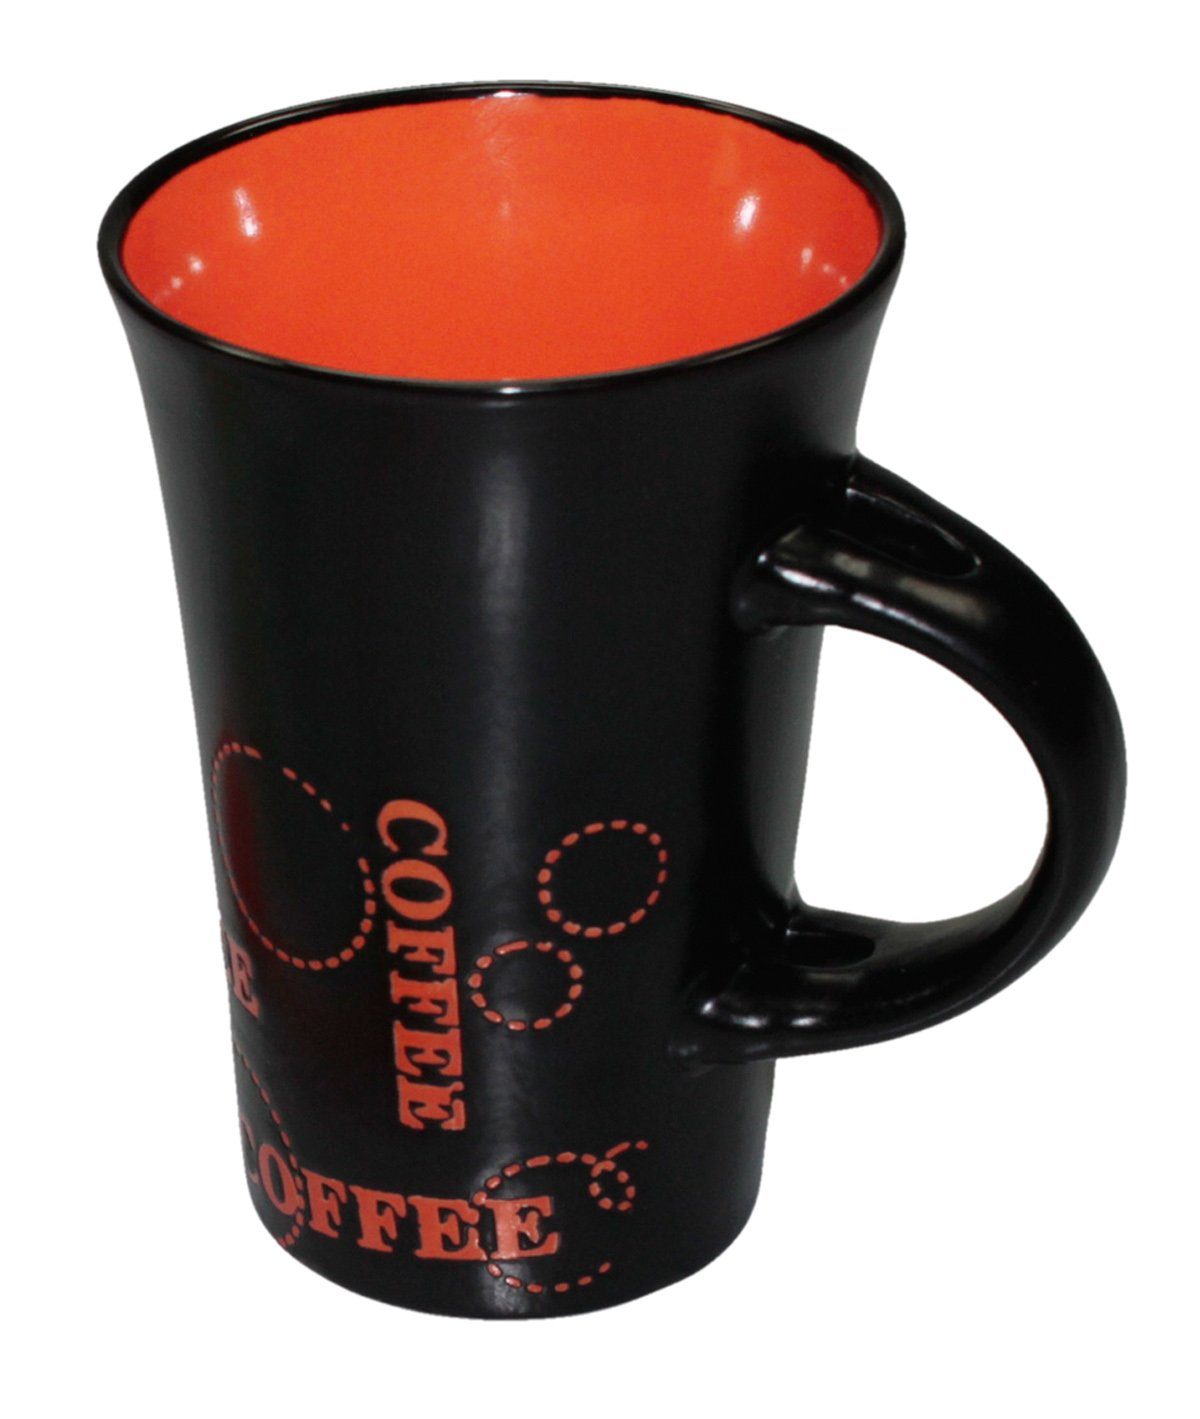 Haus und Deko Geschirr-Set Keramik Kaffeebecher Kaffeetasse schwarz bunt XL Tasse Becher passend (1-tlg), Keramik Rot